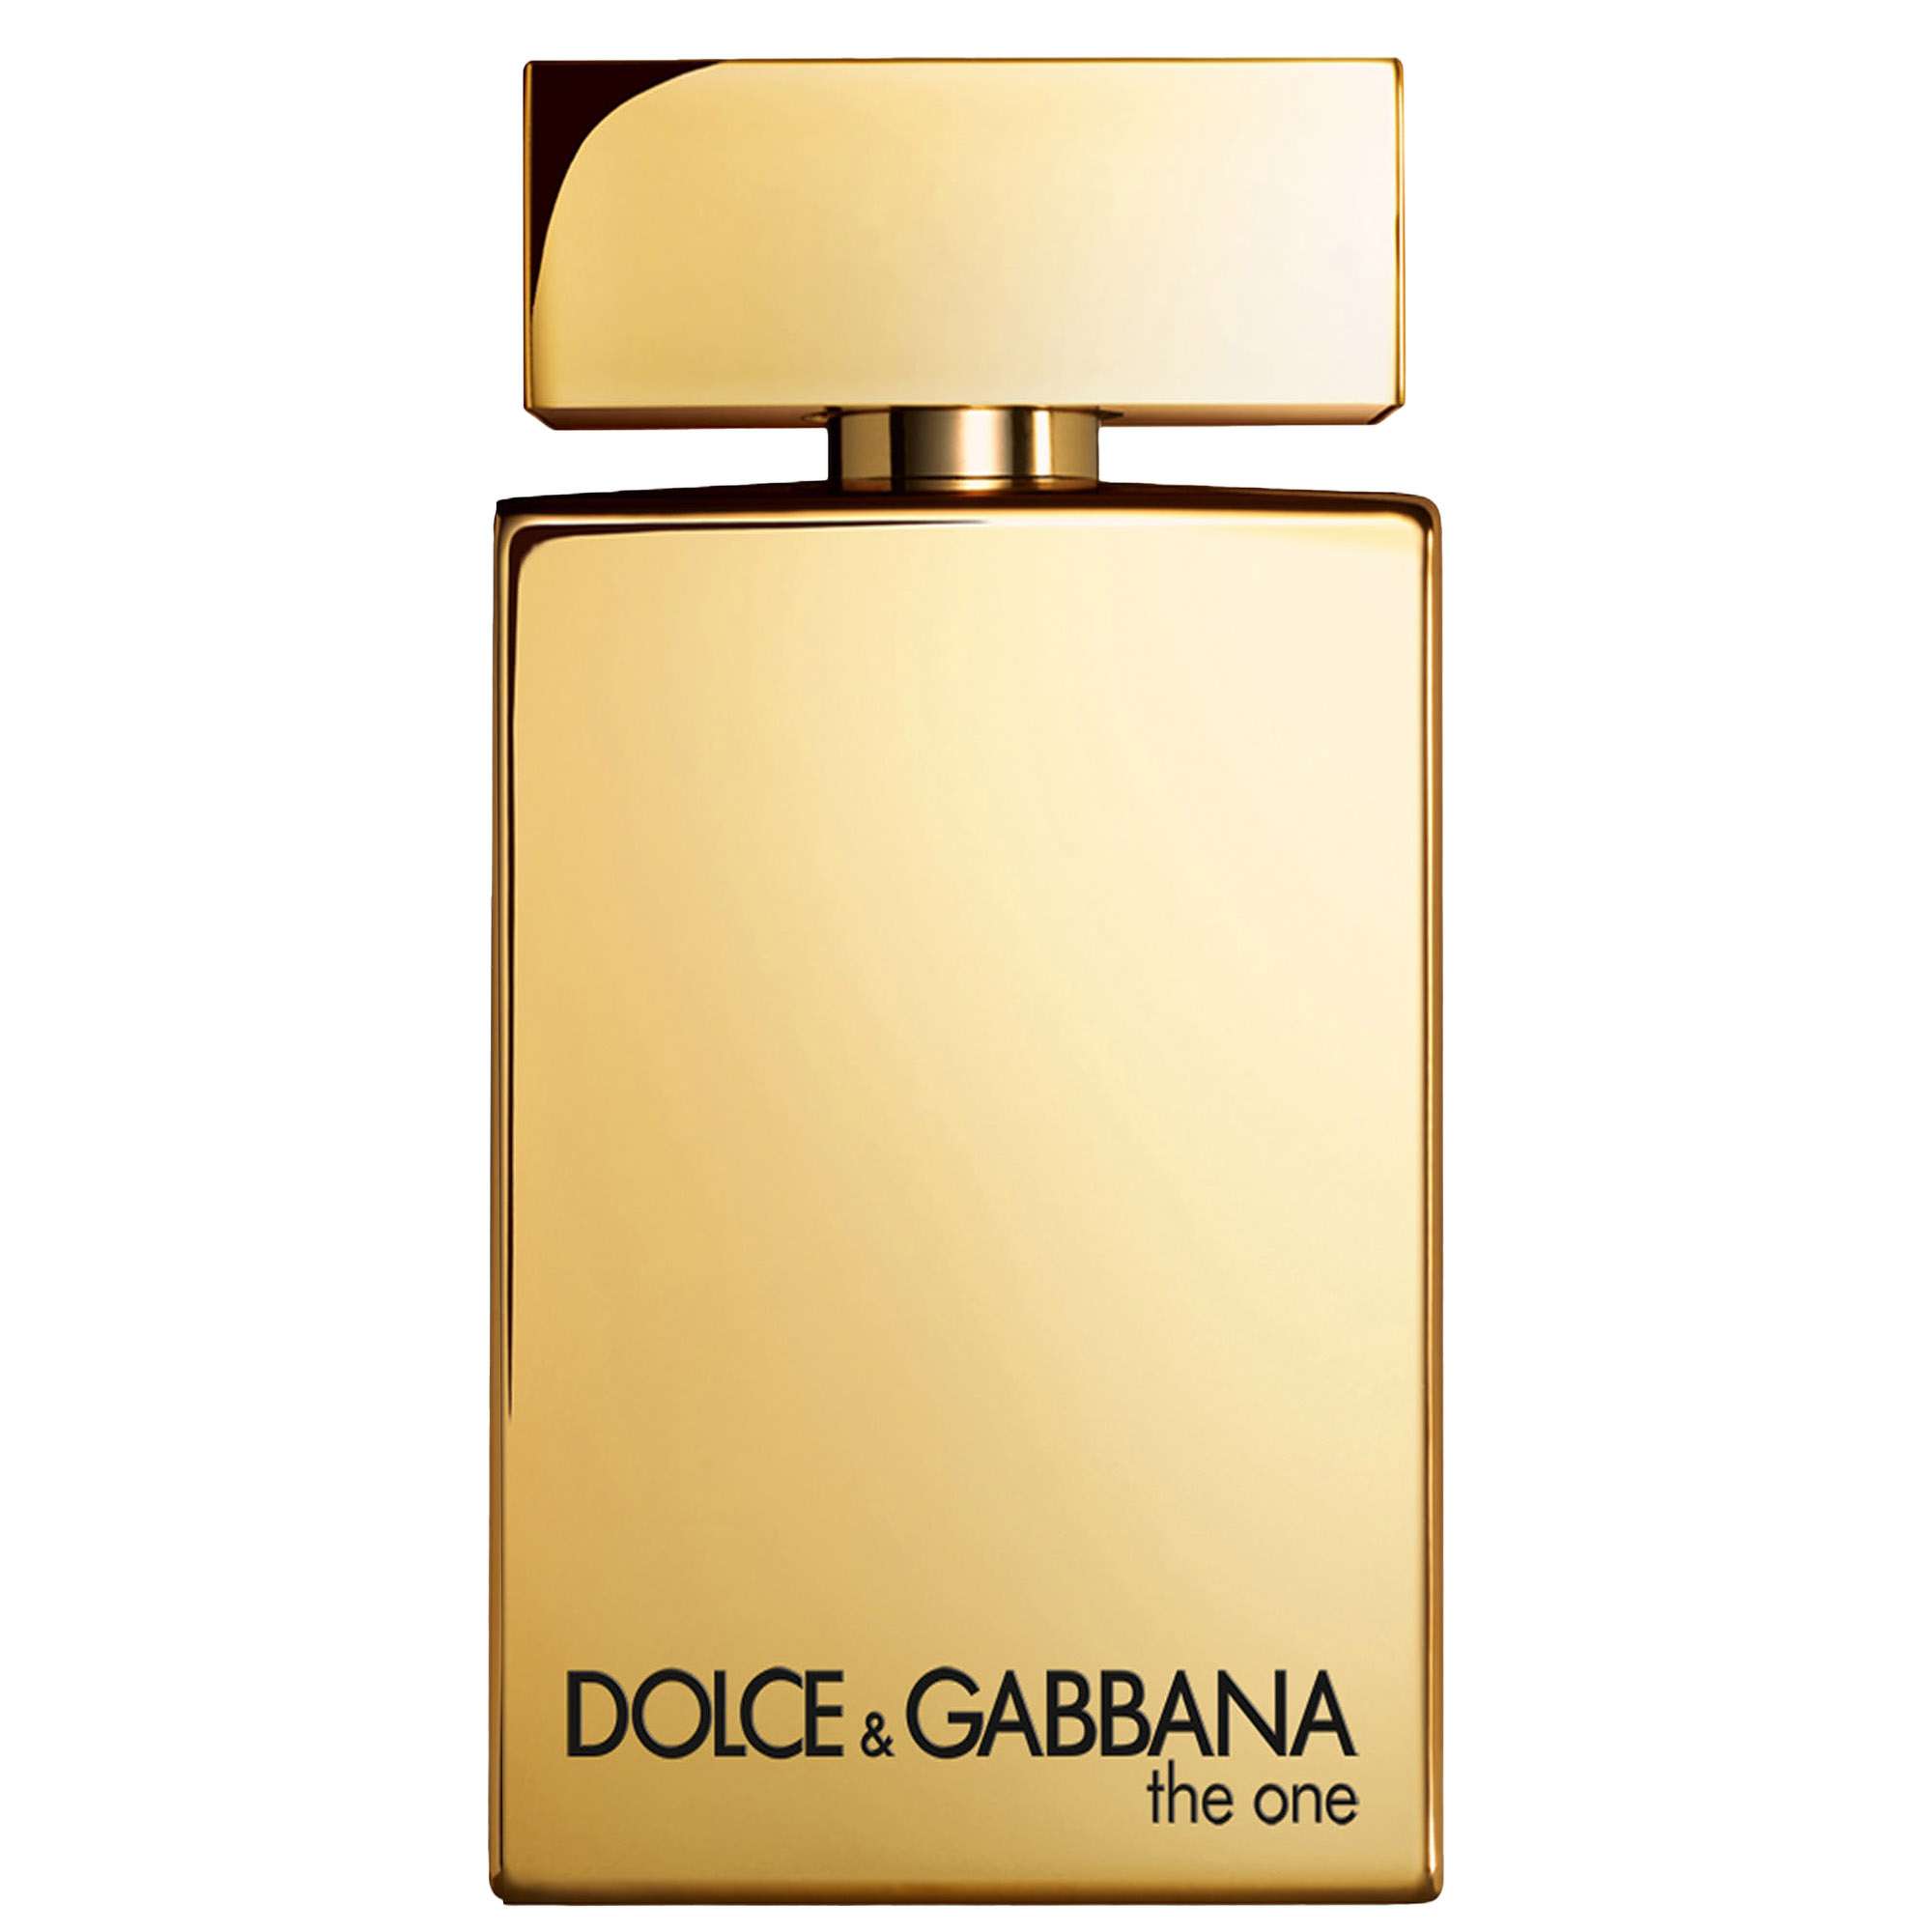 Dolce&Gabbana The One Pour Homme Gold Eau de Parfum Intense Spray 100ml